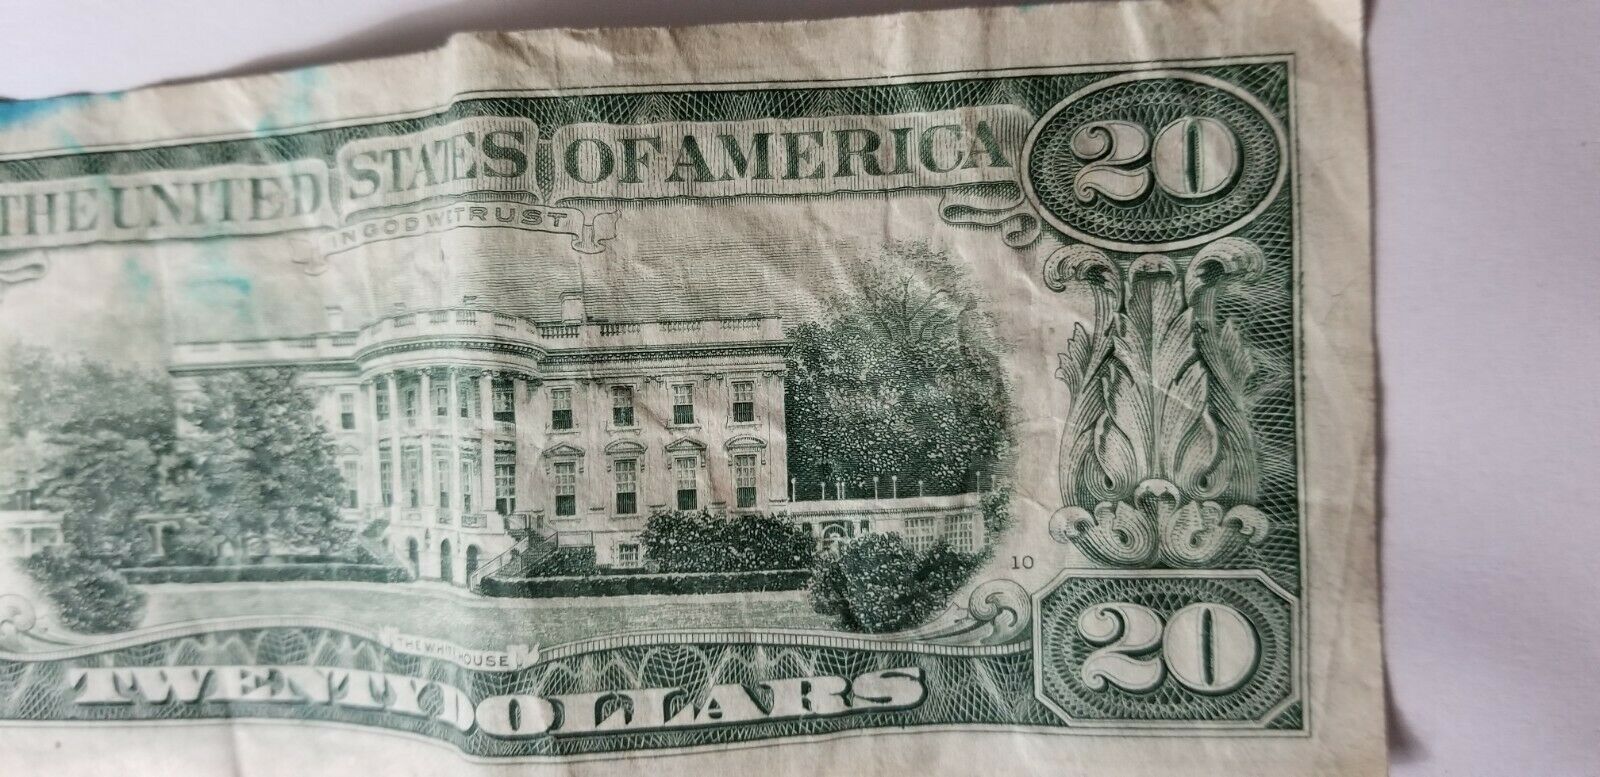 1985 20 dollar bill serial number l